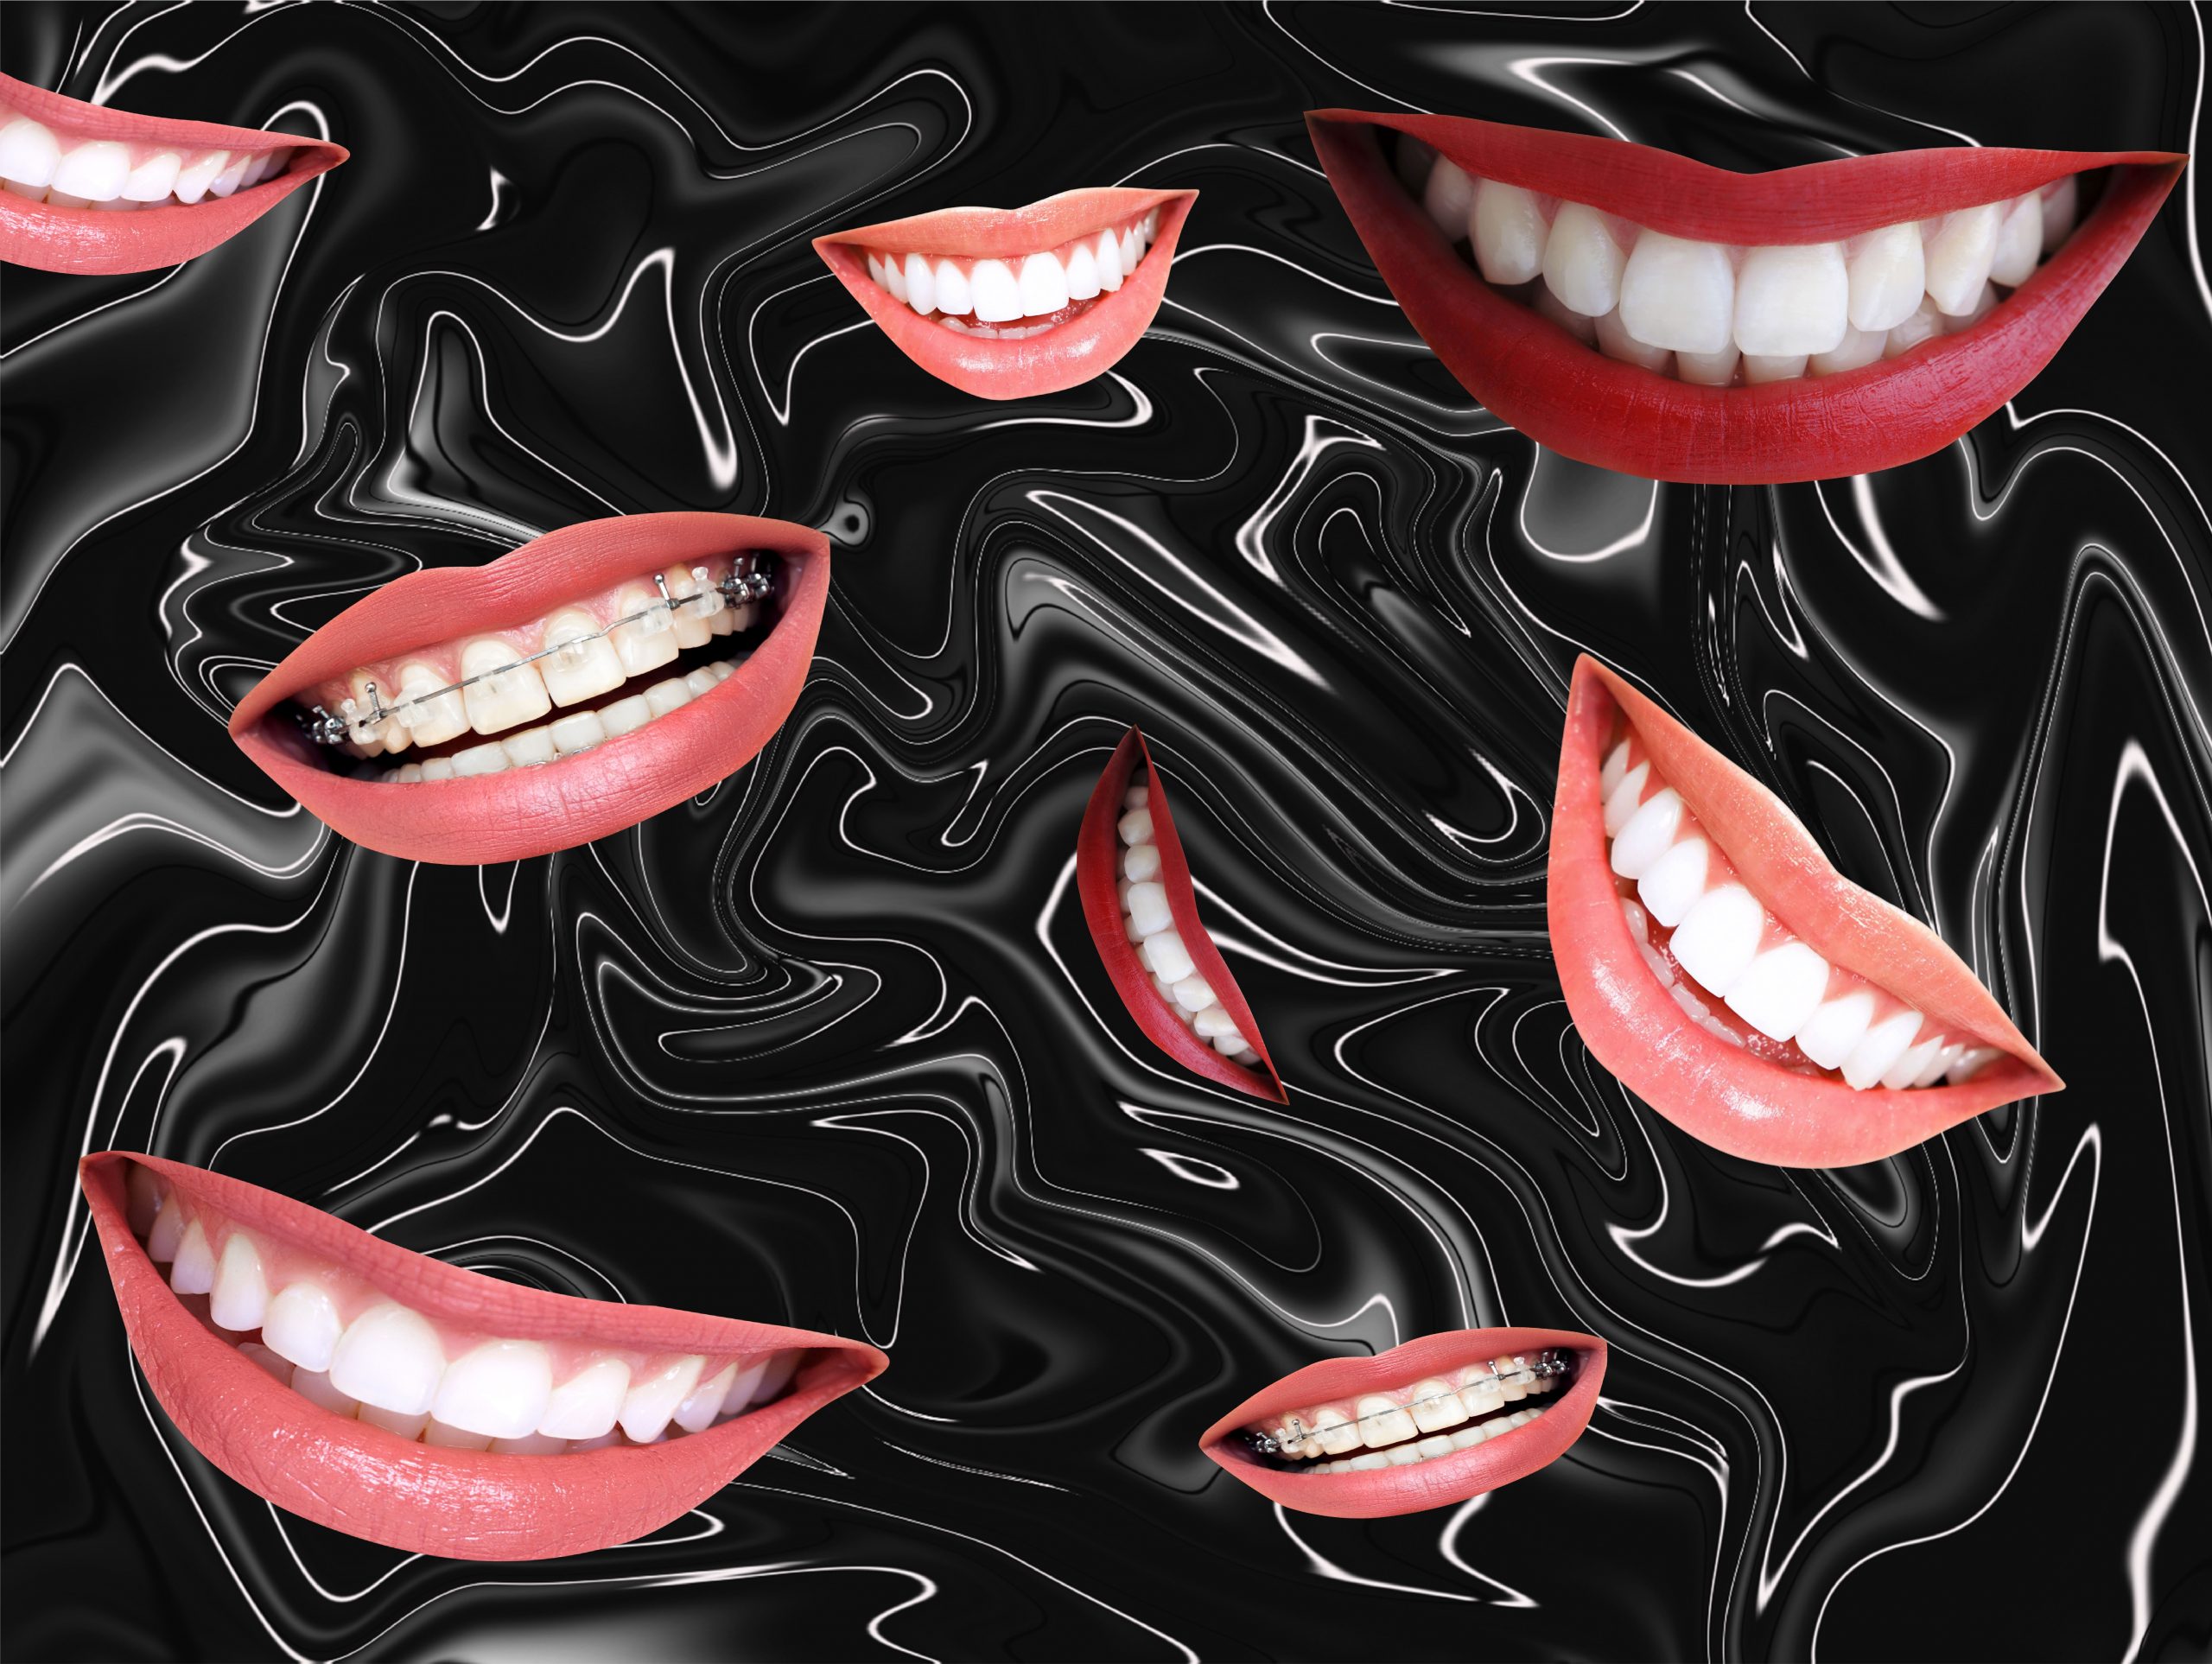 Smiling teeth